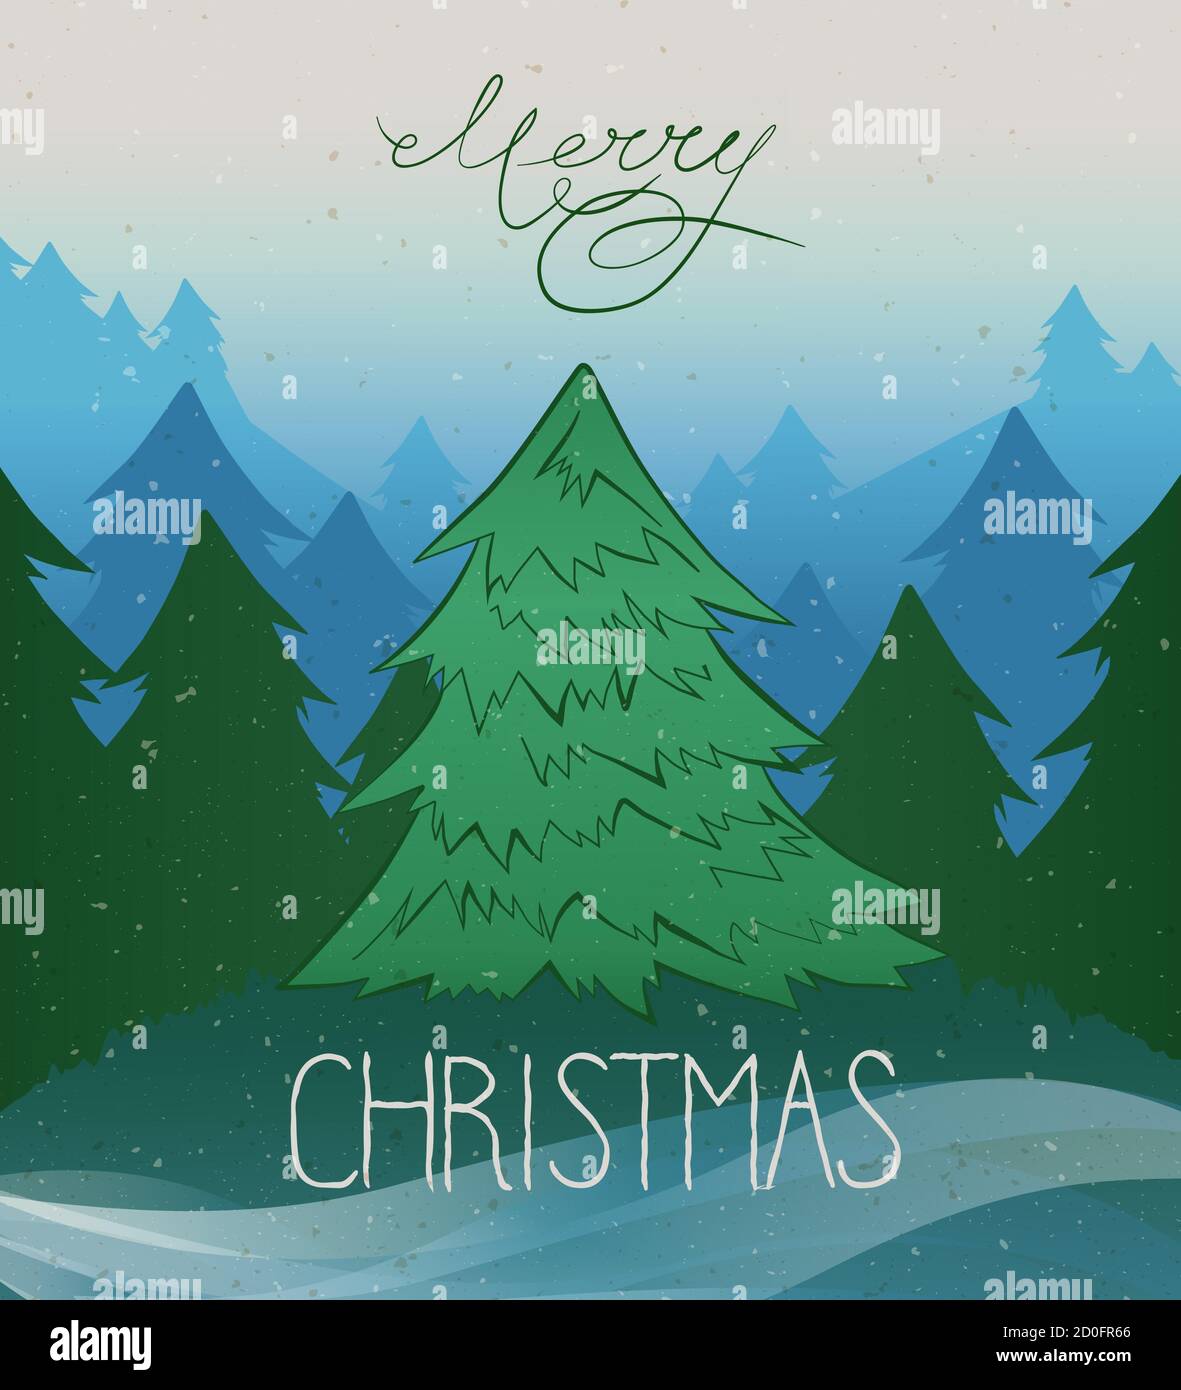 Sfondo vintage vettoriale con albero di Natale e lettere a mano di Natale allegro. Nei colori bianco, verde e blu. Illustrazione Vettoriale